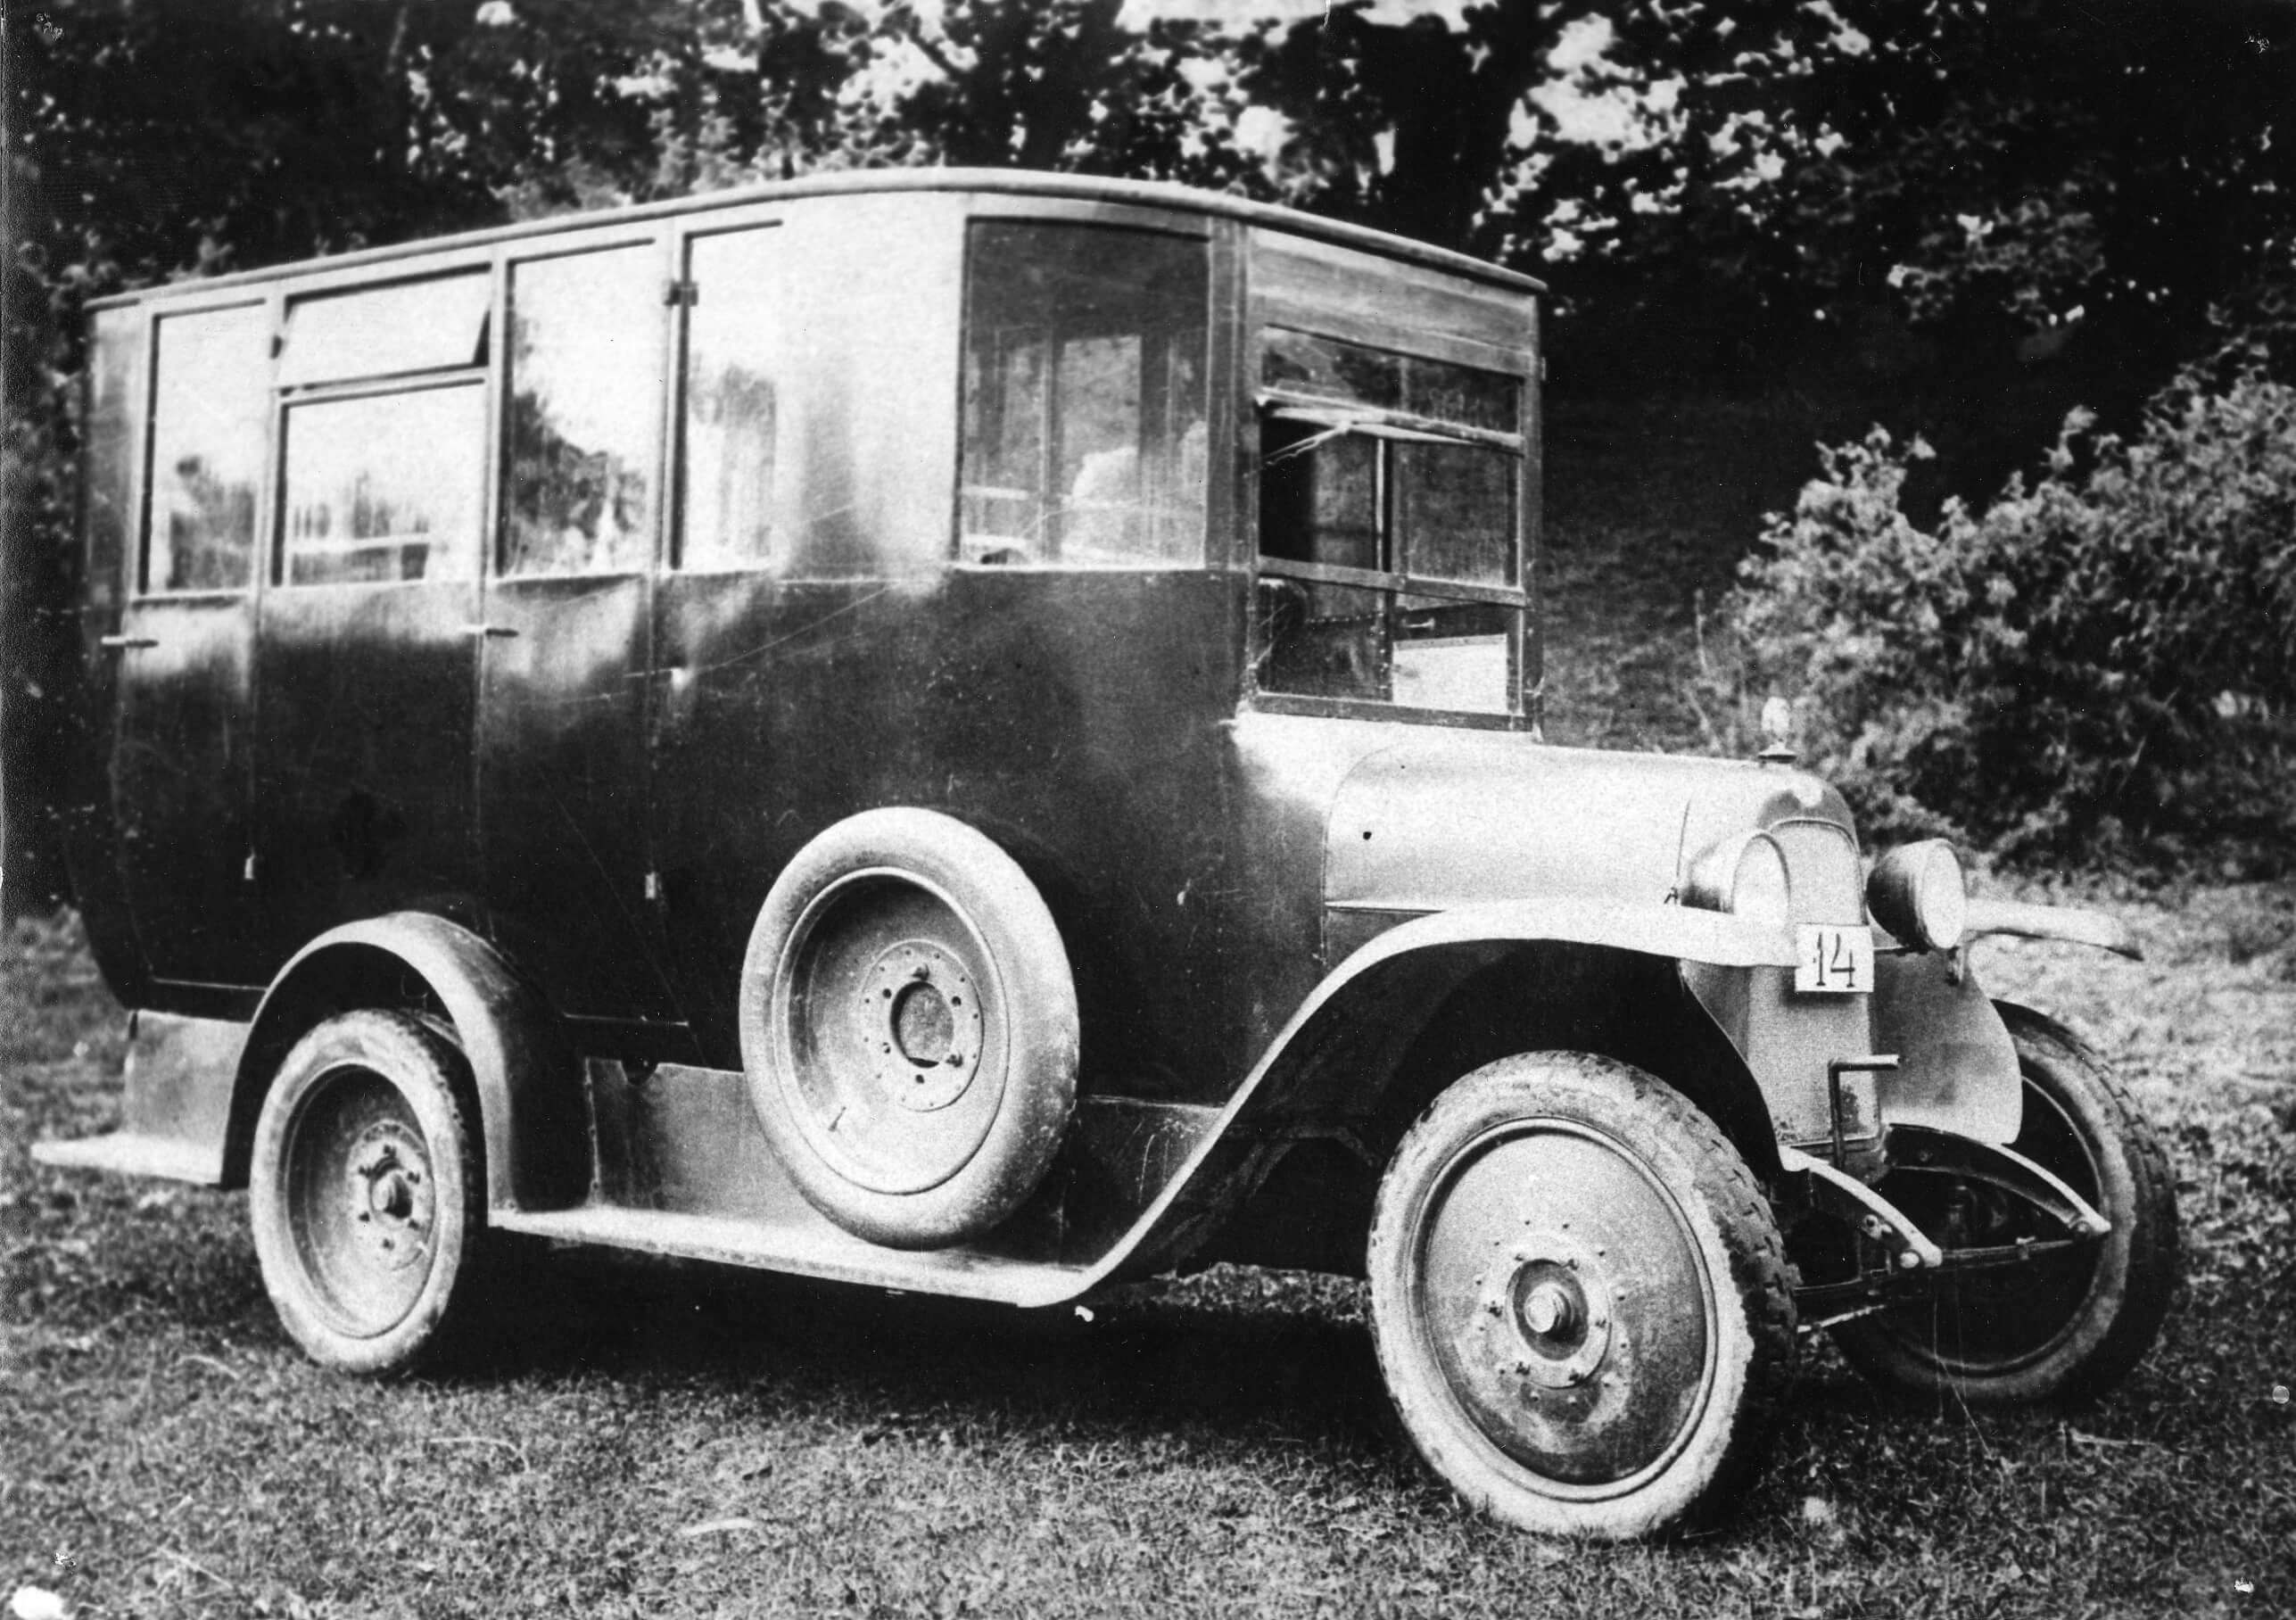 Miks ükski klient ei istu mu Fiati? 1925. aasta kevadel taotles autoärimees Hans Vinnal 1925. teedeministeeriumilt loa Tallinna–Pärnu bussiliini käimapanekuks. Autokuninga hinnangul olid sobivaimaiks masinaiks meie teedel Fiati mudelile 505 (fotol) põhinevad 16-kohalised bussid. Juba sama aasta septembris teatas aga Vinnal liini tegevuse lõpetamisest, viidates reisijate puudusele. Tollal tuli ettevõtjatel liine nö “sissetöötada”, sest rahvas vajas bussisõiduga harjumist. Foto: Eesti Maanteemuuseum